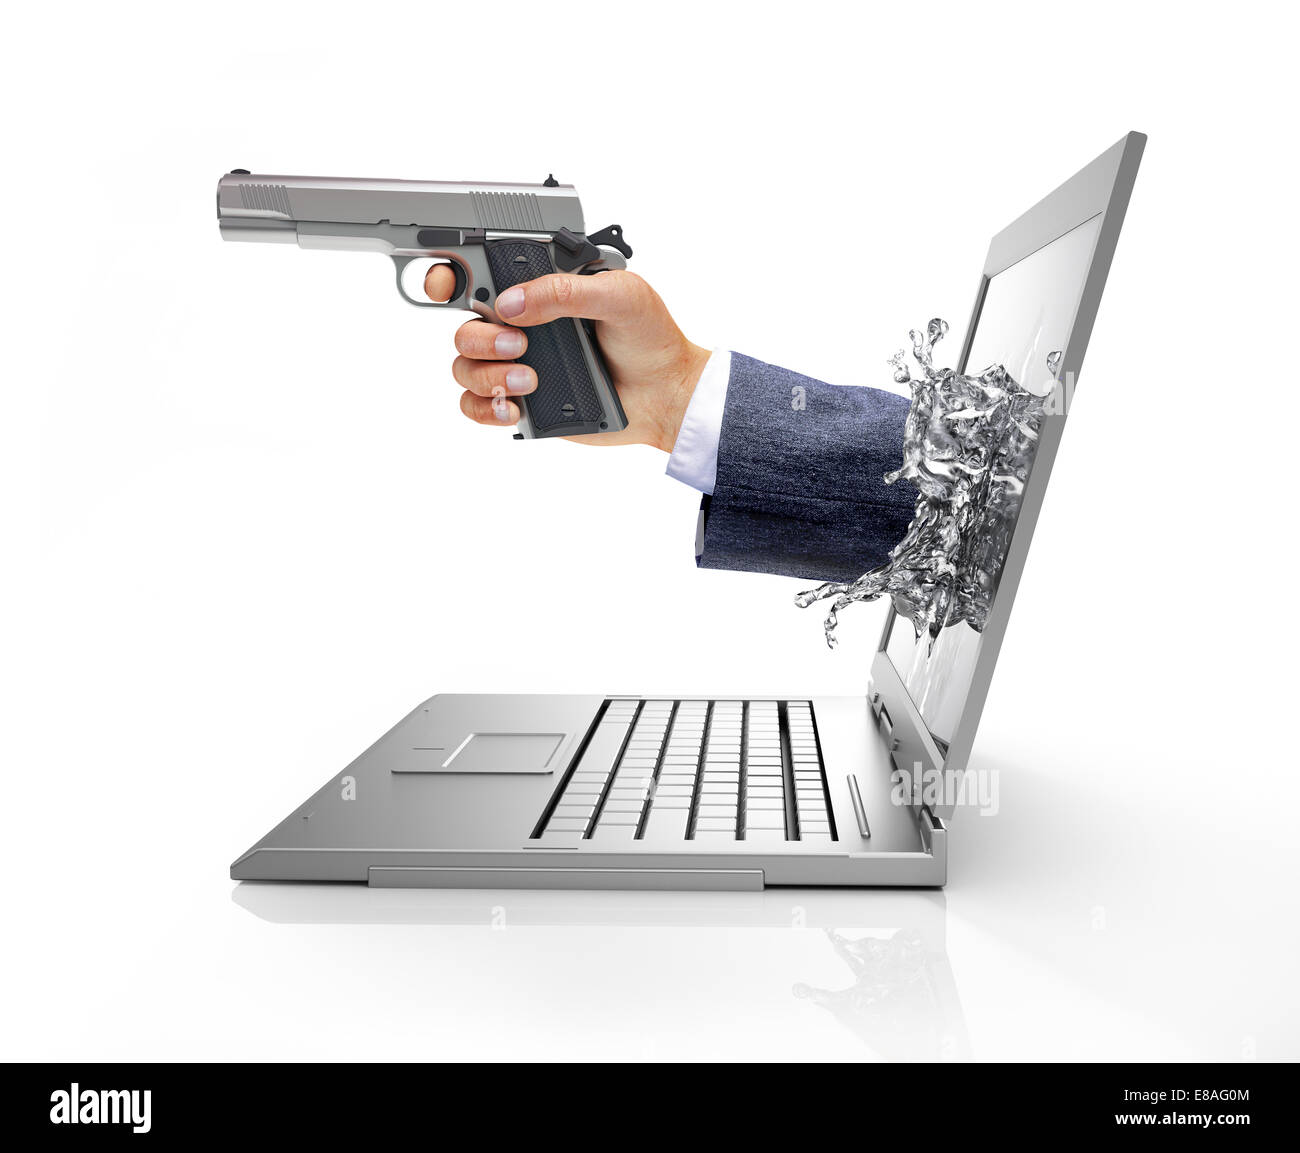 Hände des Mannes, die sich aus einem Computer-Laptop-Bildschirm, einen Spritzer von flüssigen Kristalle bilden, halten eine silberne Pistole. Aus betrachtet Stockfoto